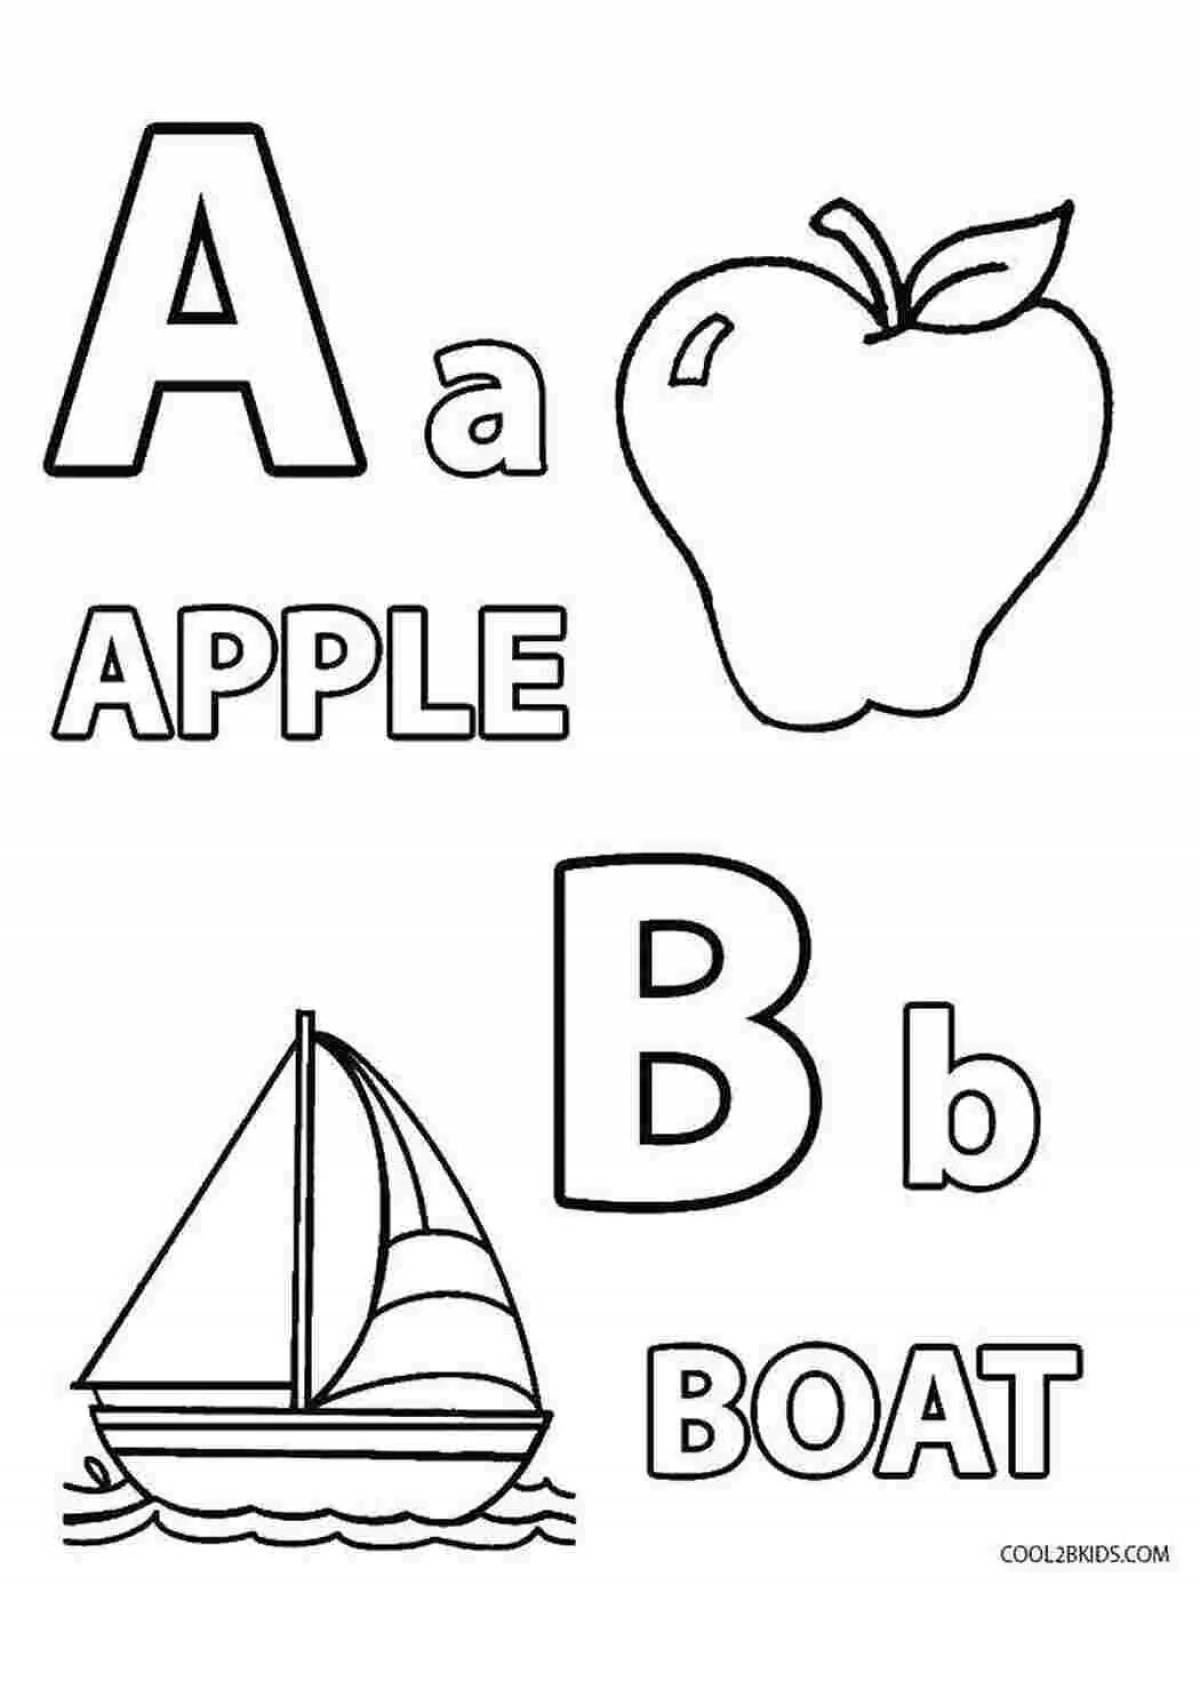 English grade 2 alphabet #1